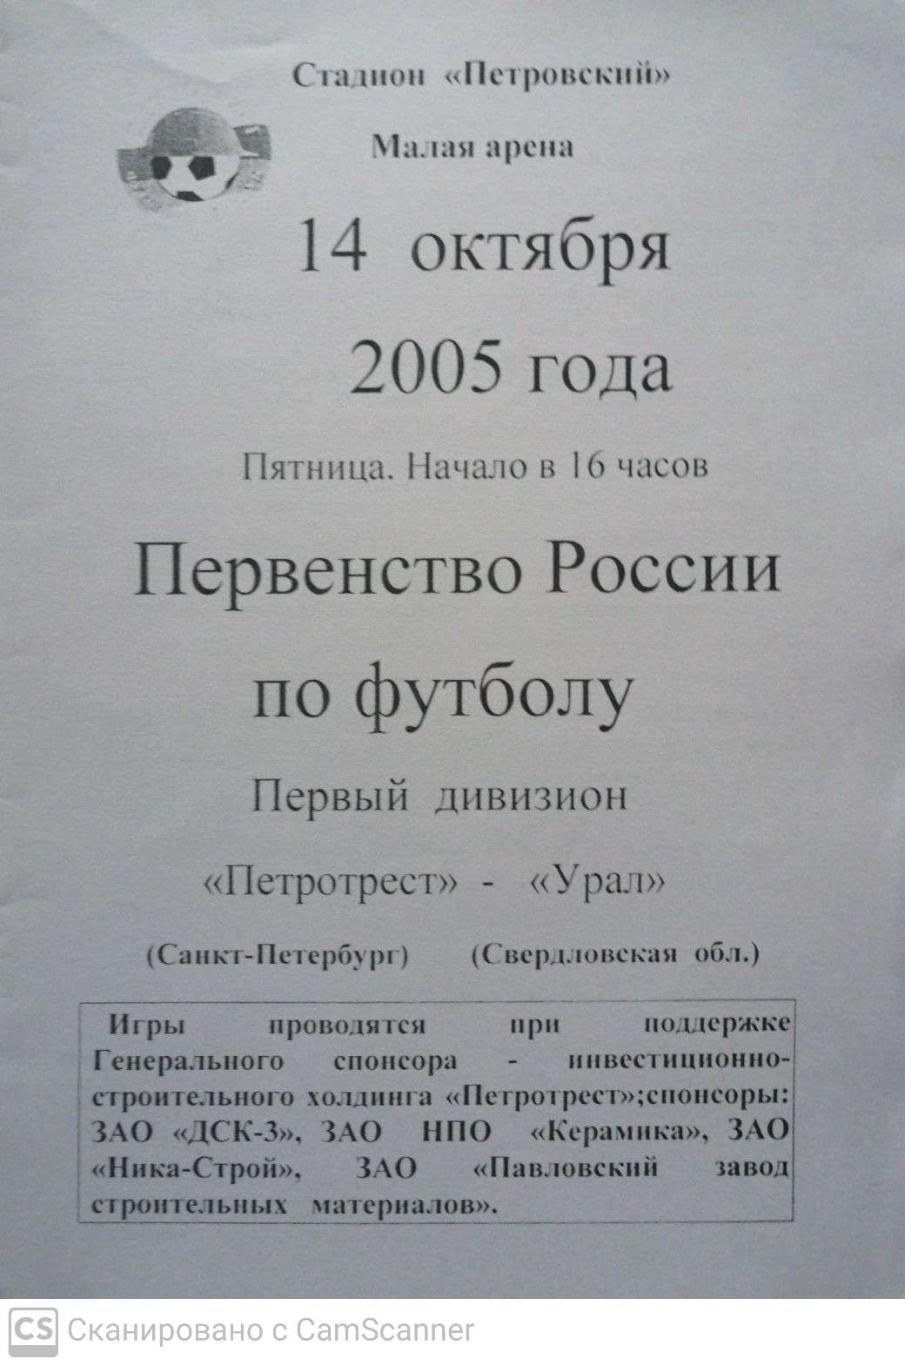 Первый дивизион. Петротрест СПб - Урал 14.10.2005